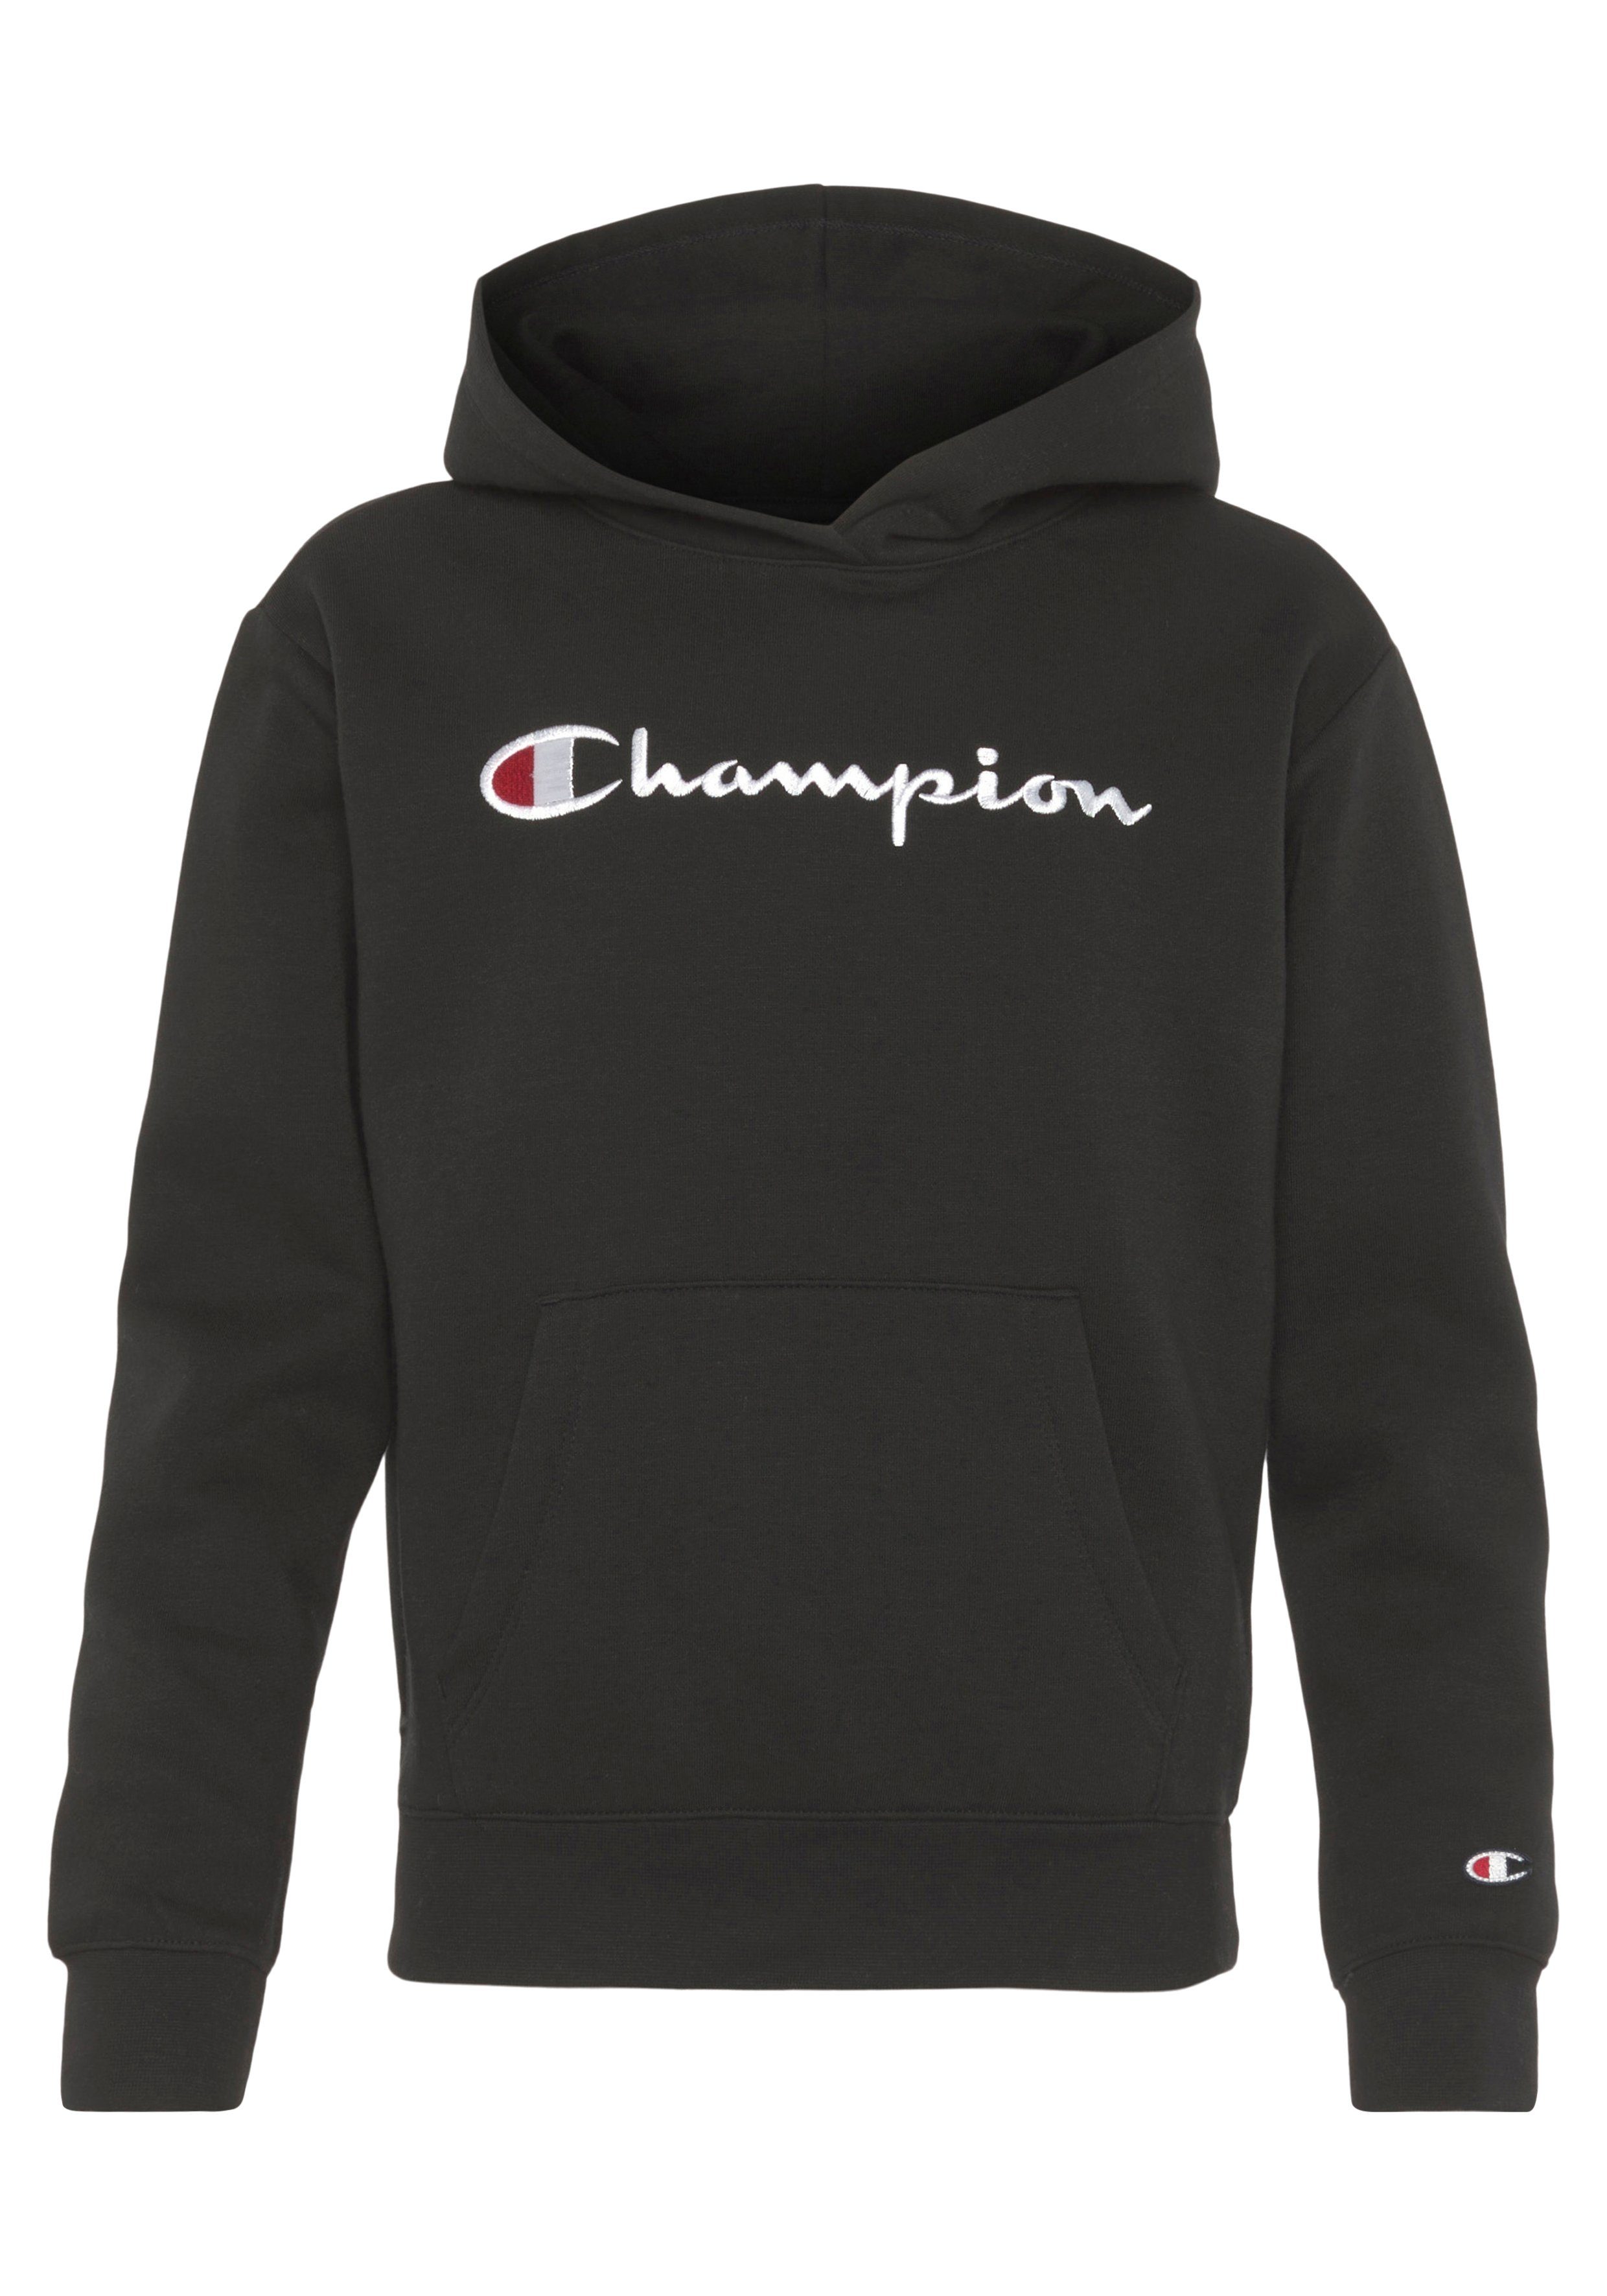 Champion Sweatshirt Classic Hooded Sweatshirt large Logo - für Kinder schwarz